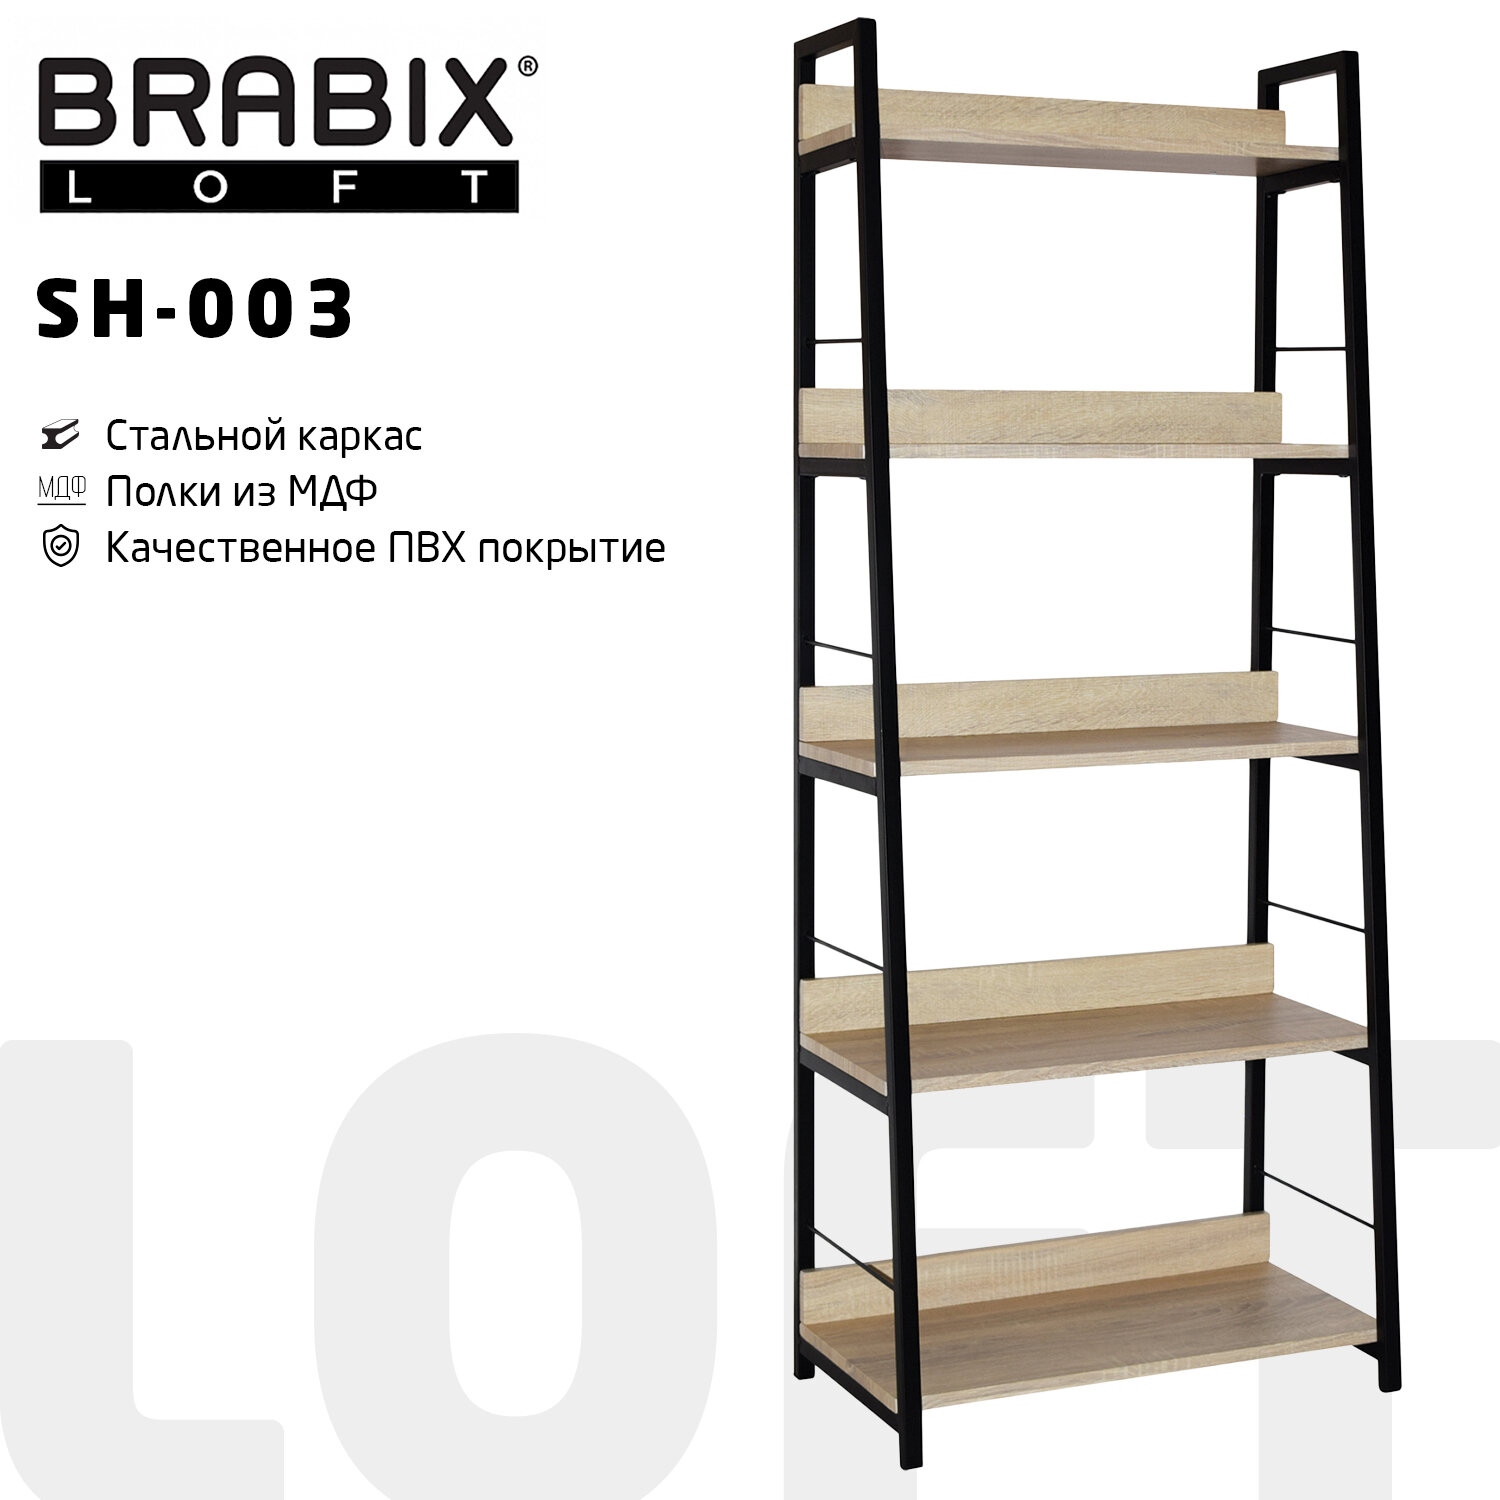    BRABIX LOFT SH-003, 6003501500 , 5 ,   , 641236